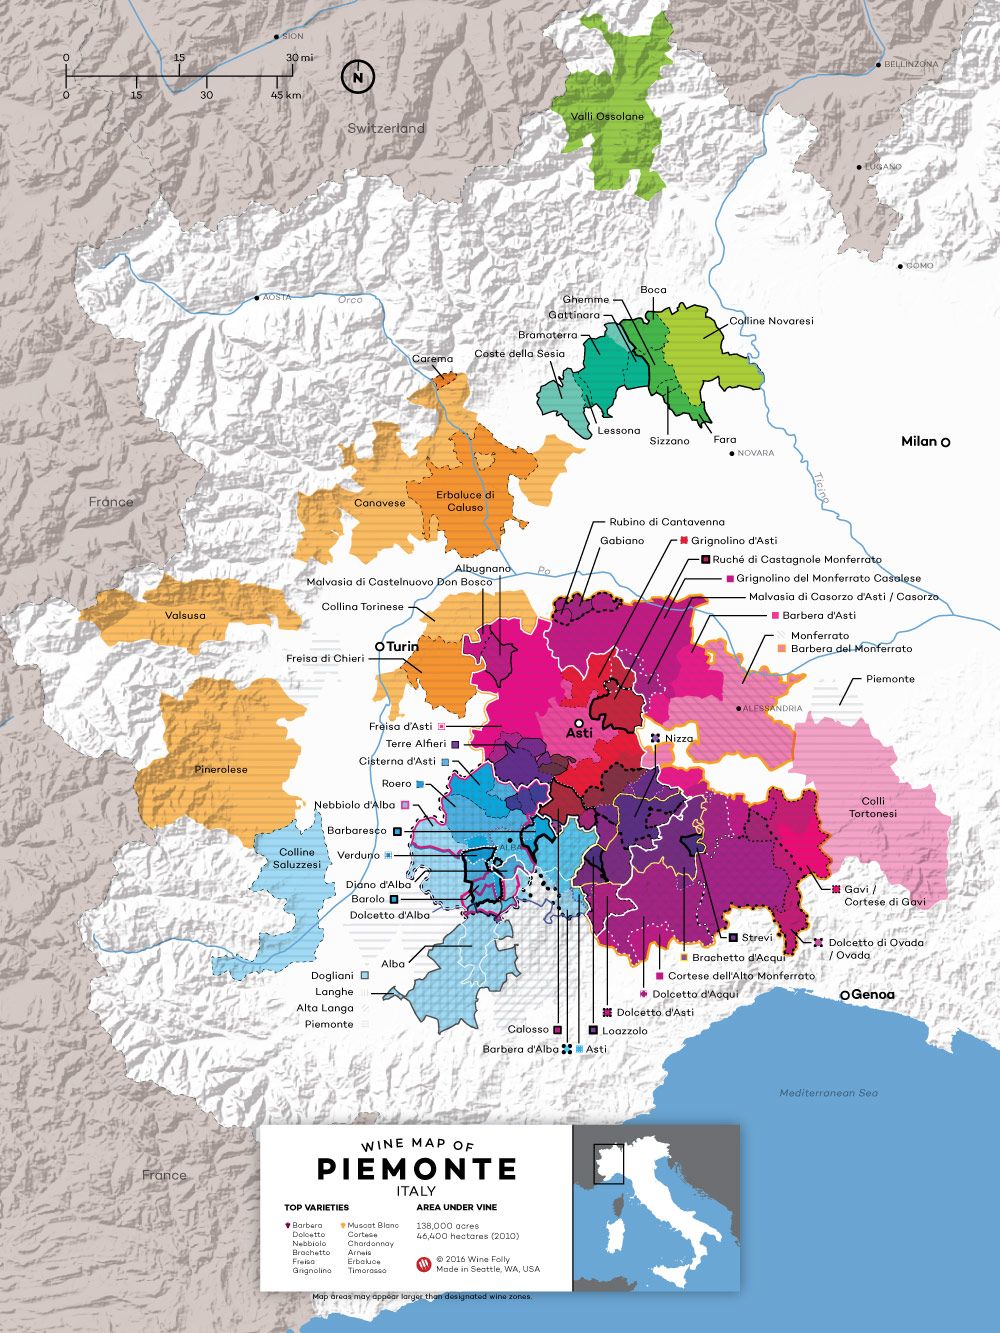 Fakta wain Nebbiolo - carta radar profil rasa oleh Wine Folly